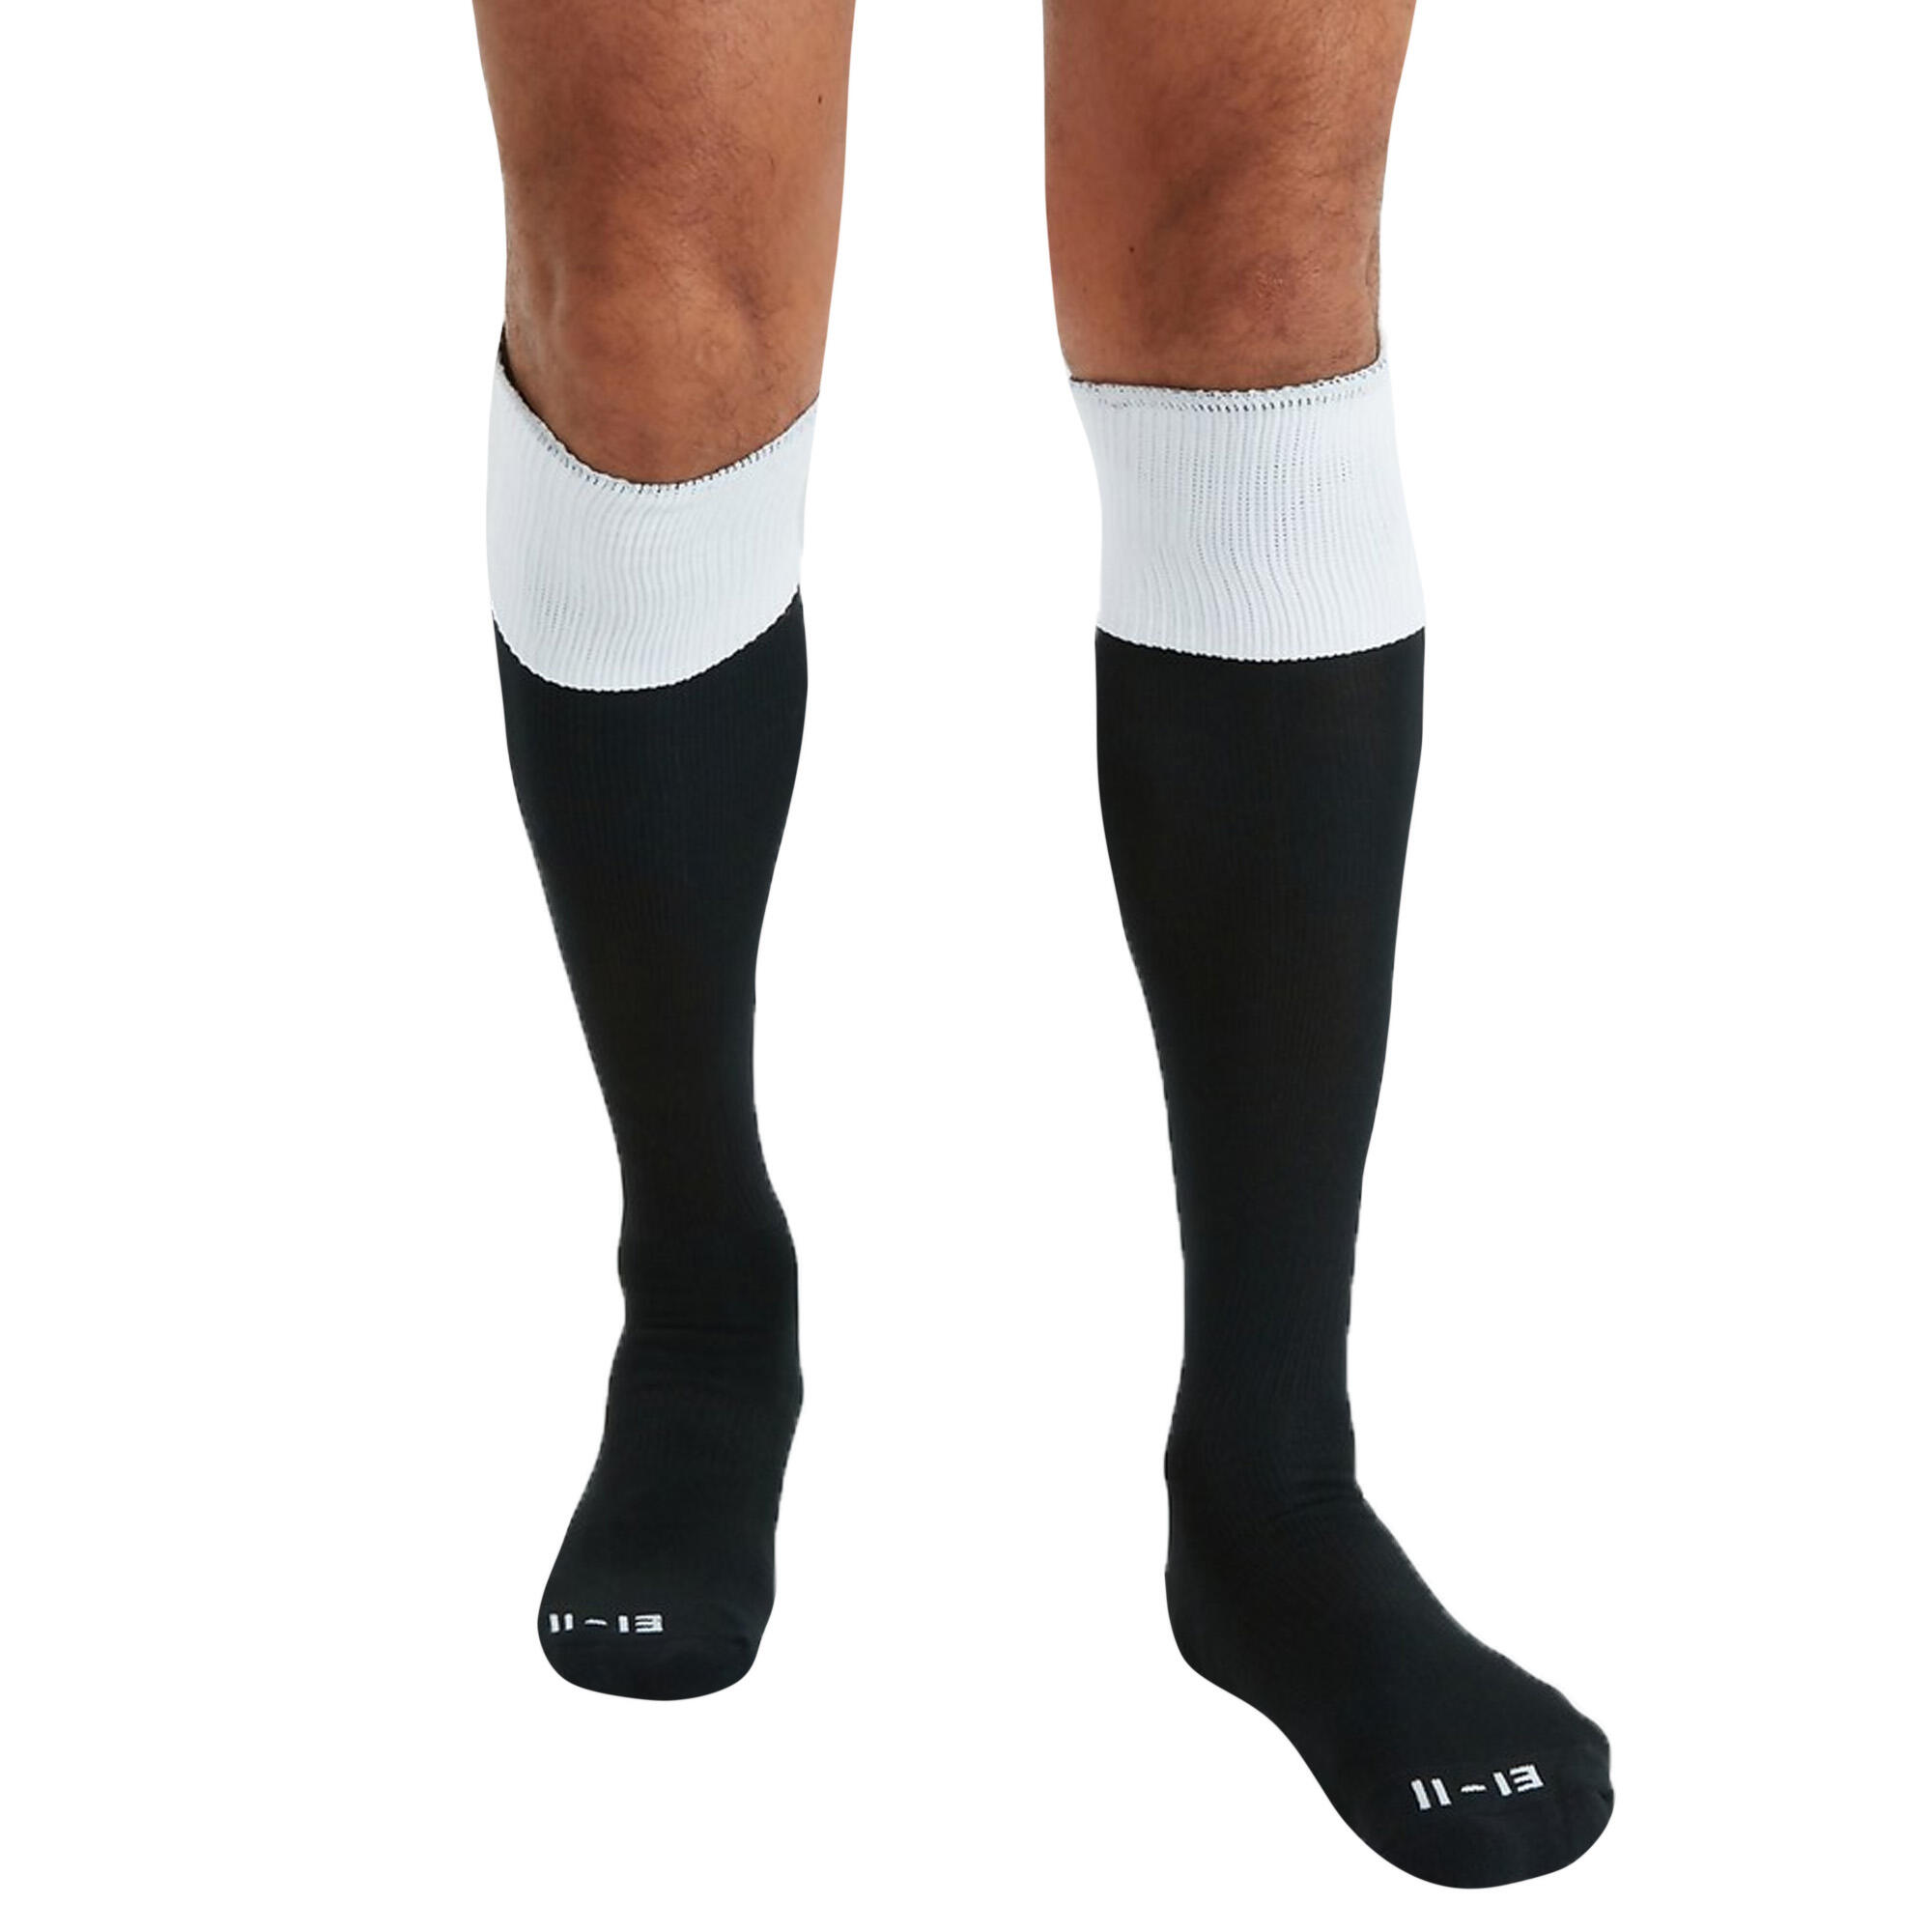 Mens Team Rugby Socks (Black/White) 1/3